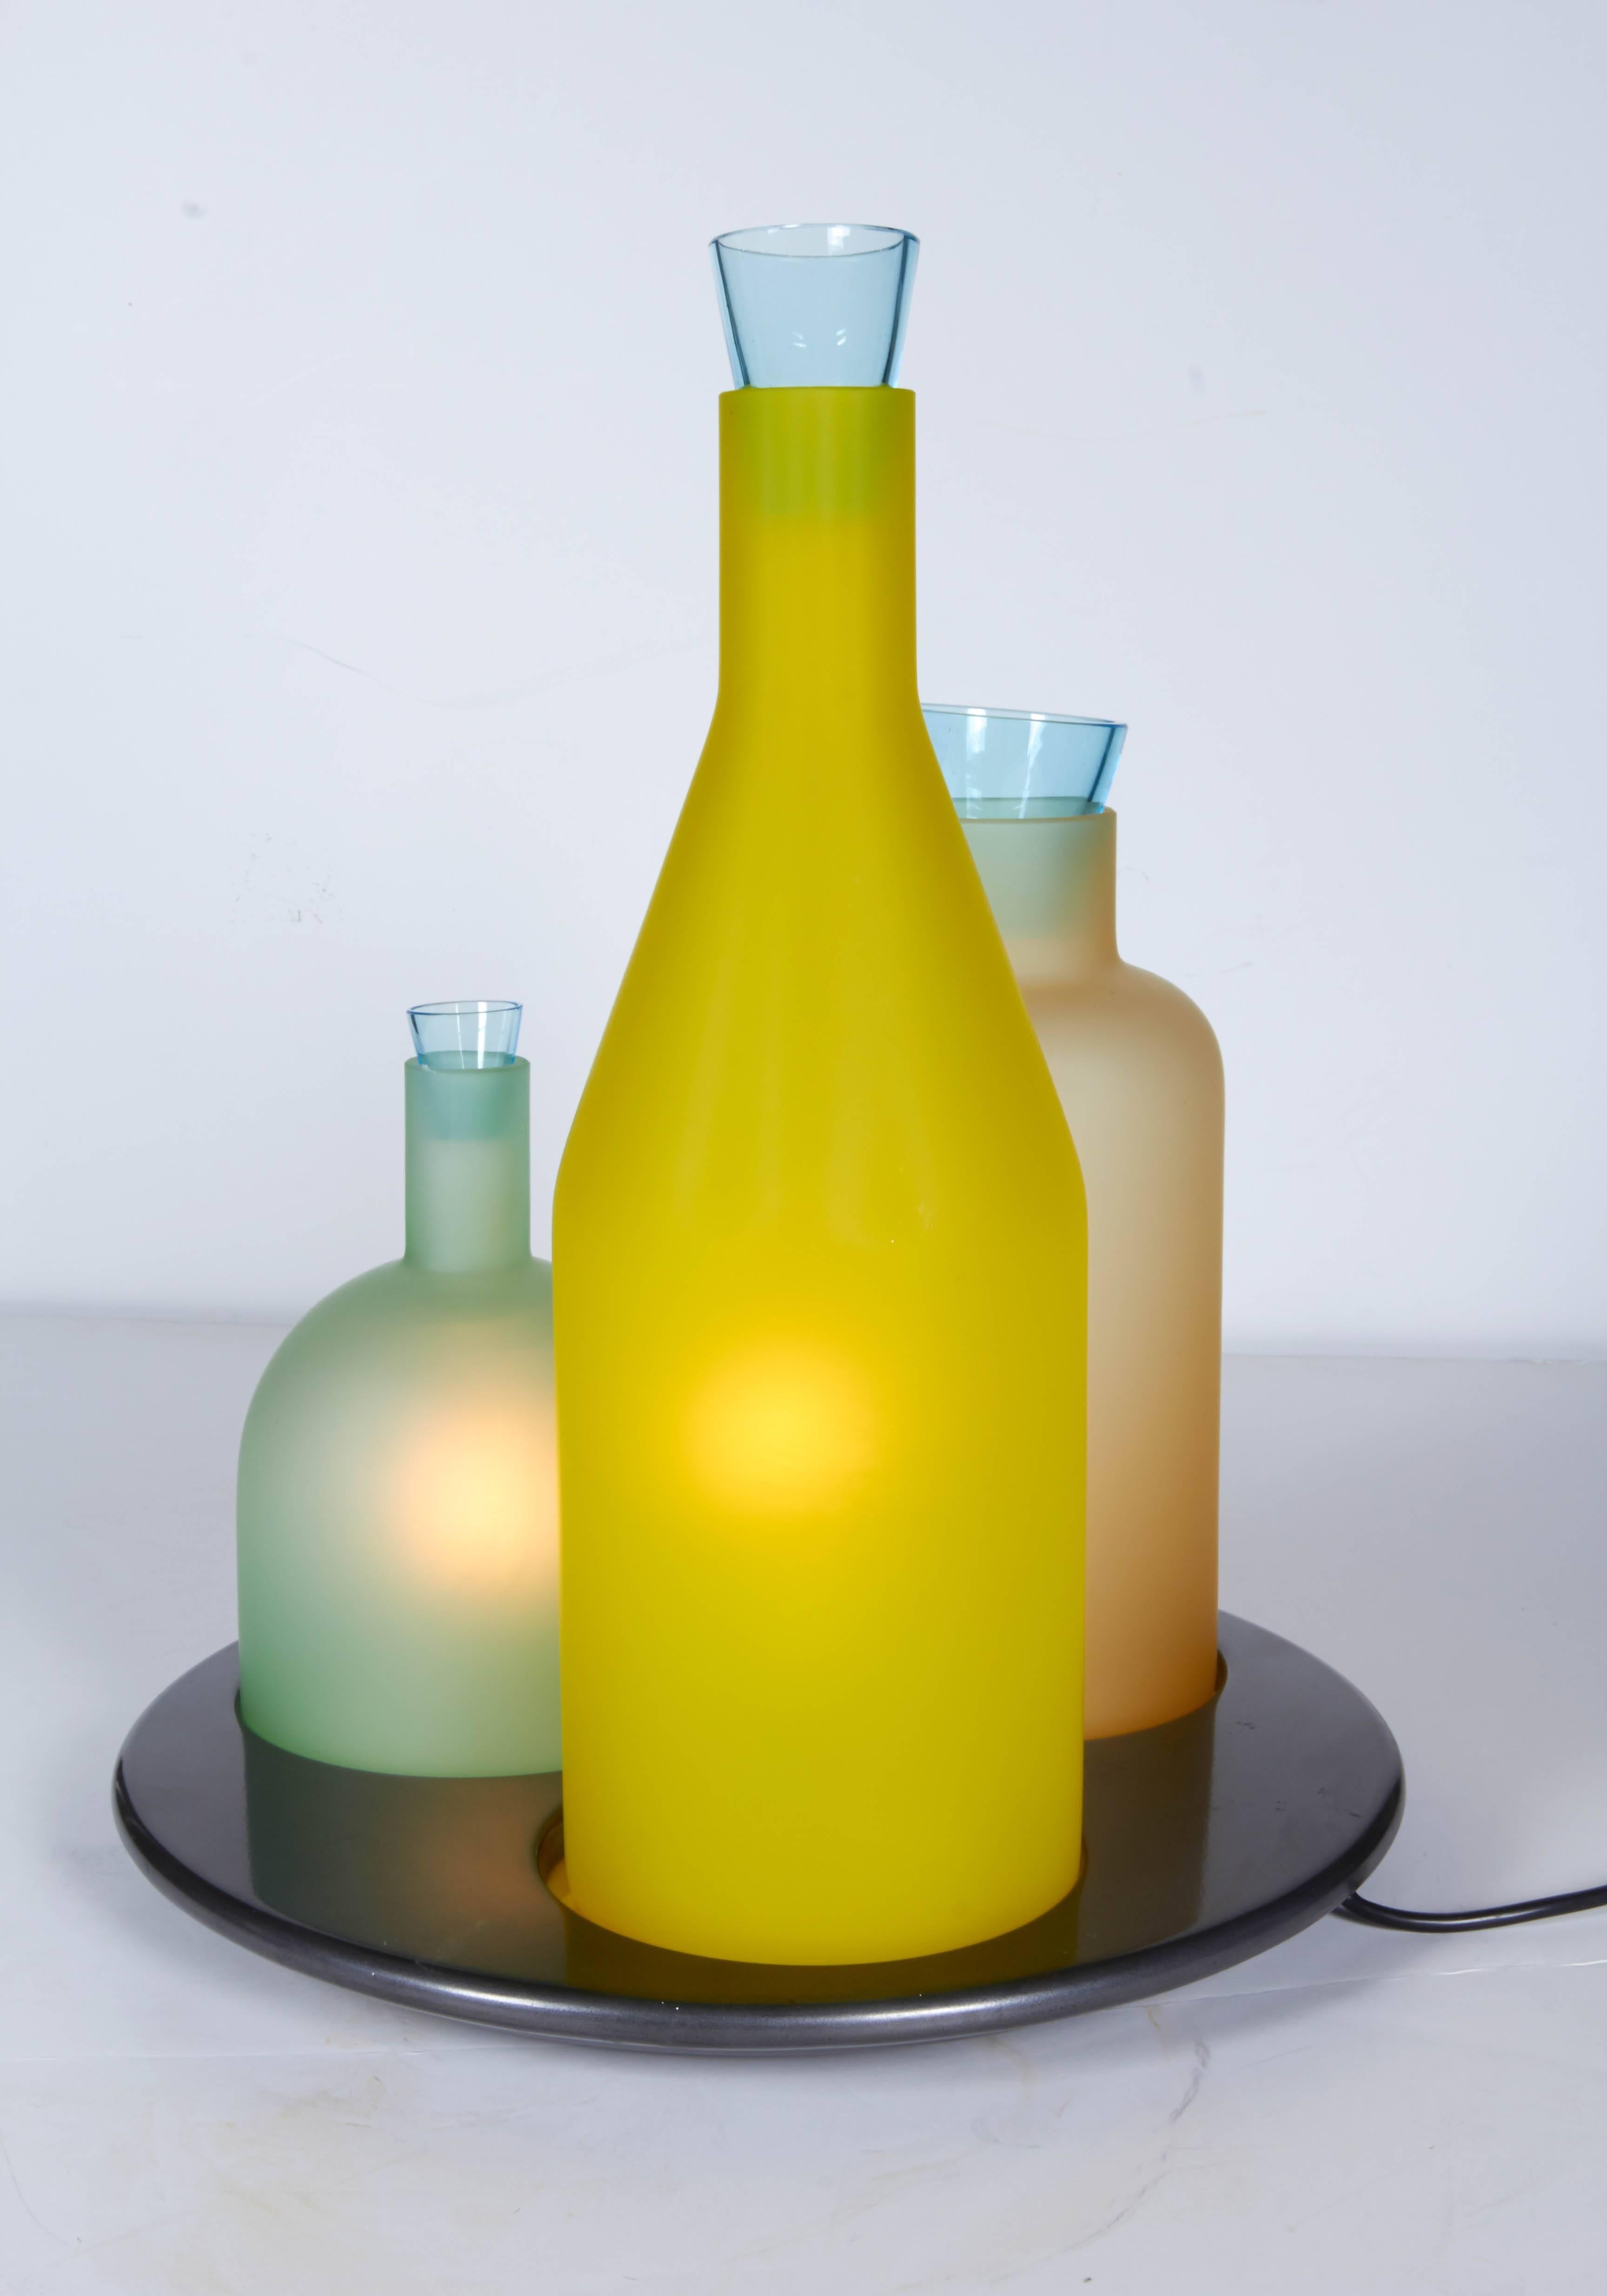 Metalwork Bacco 1-2-3 Italian Murano Glass Table Lamp